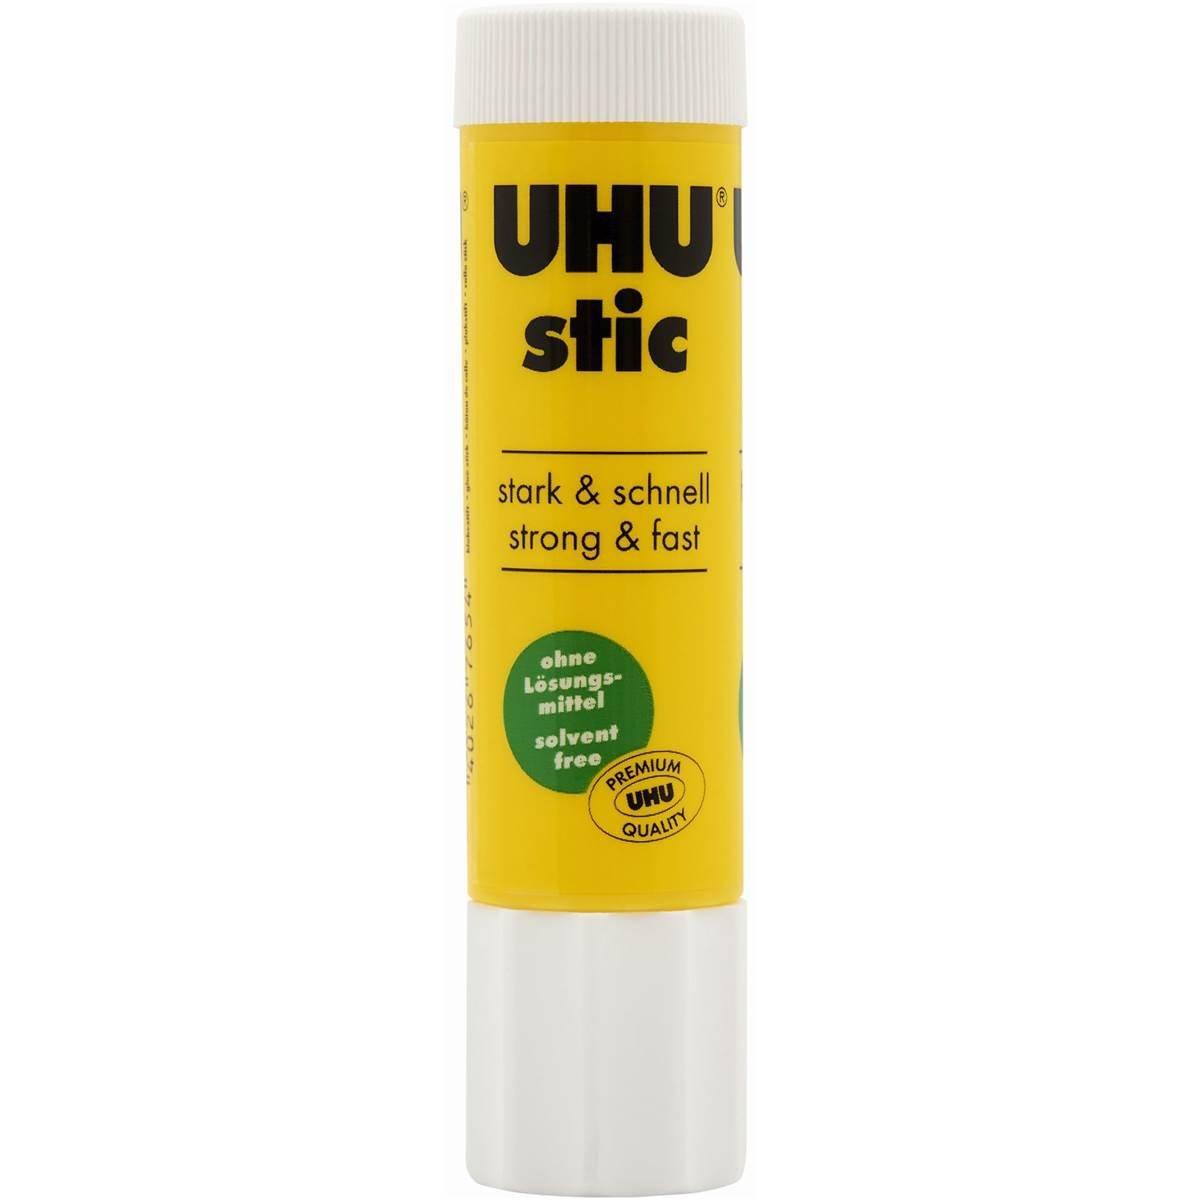 UHU Stic - 0.29 oz / 8.2g Clear Glue Stick - Pack of 3 Clear White